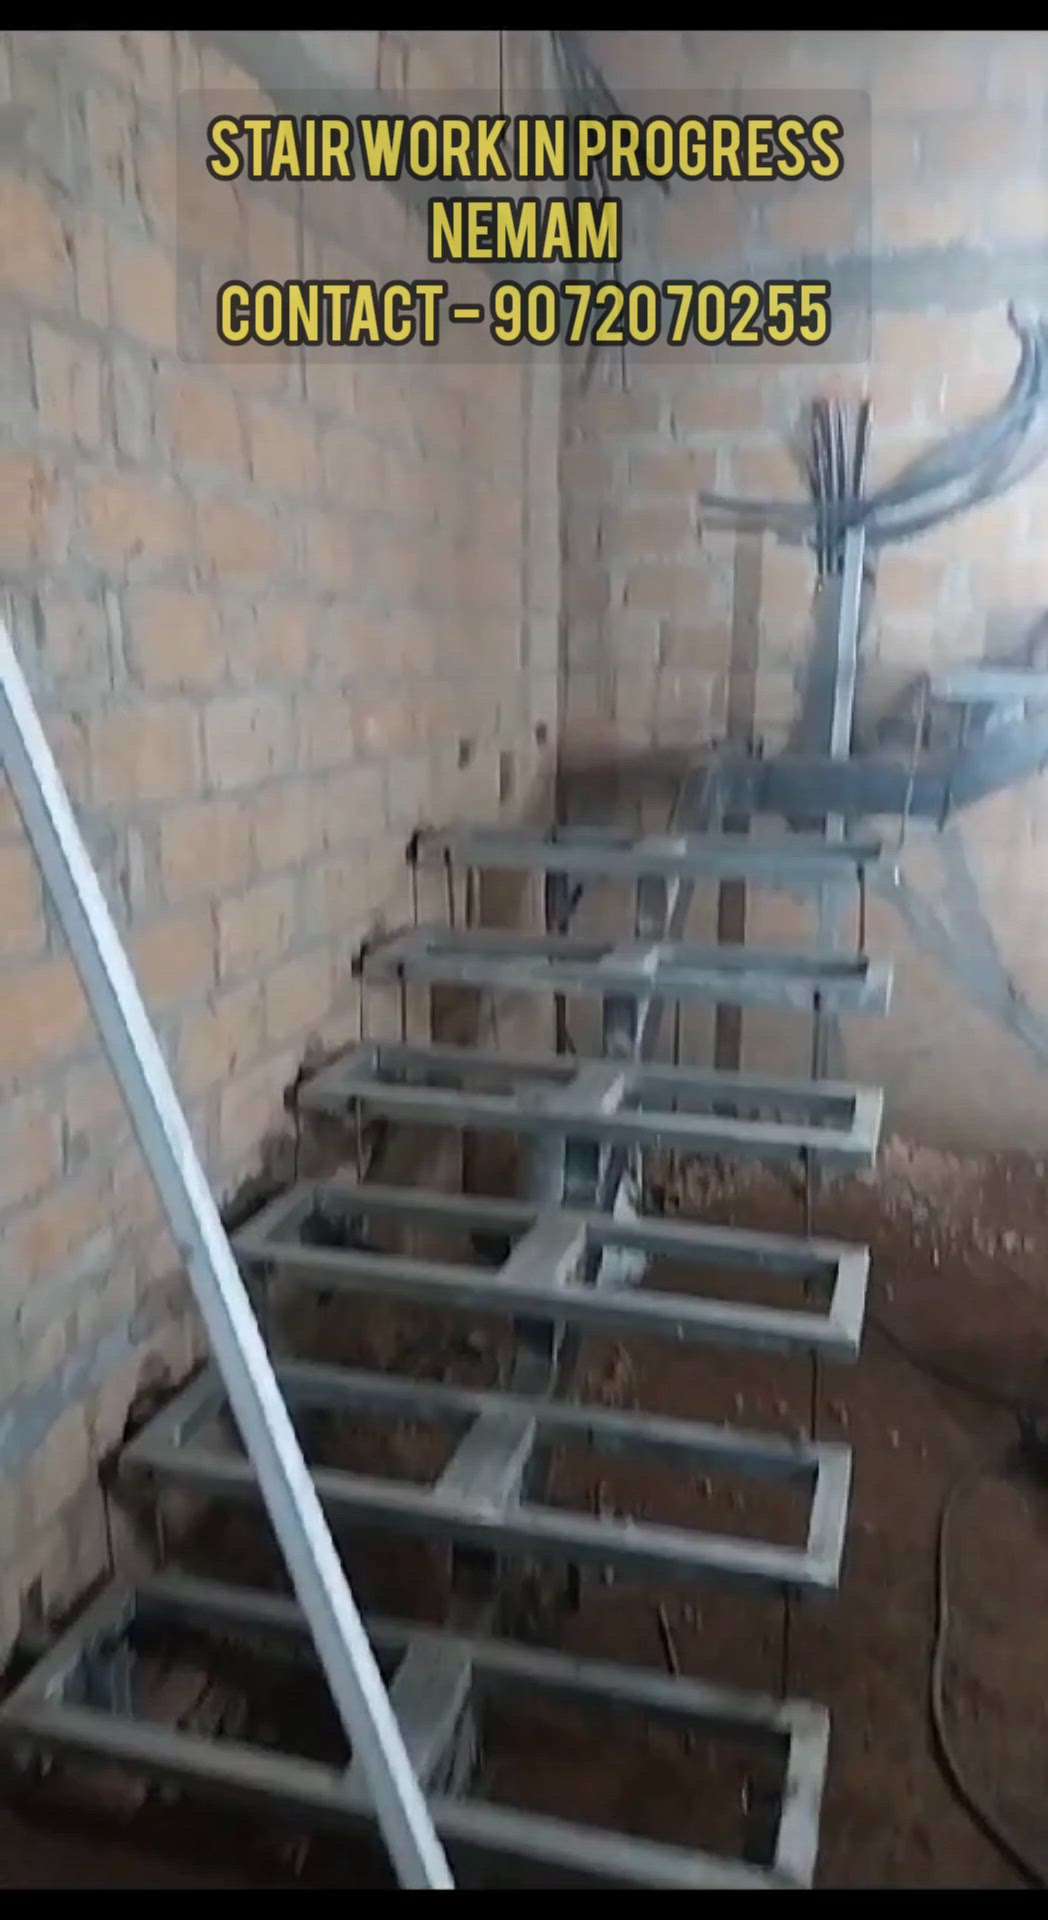 steel stair work nemam
contact :- 90 720 702 55